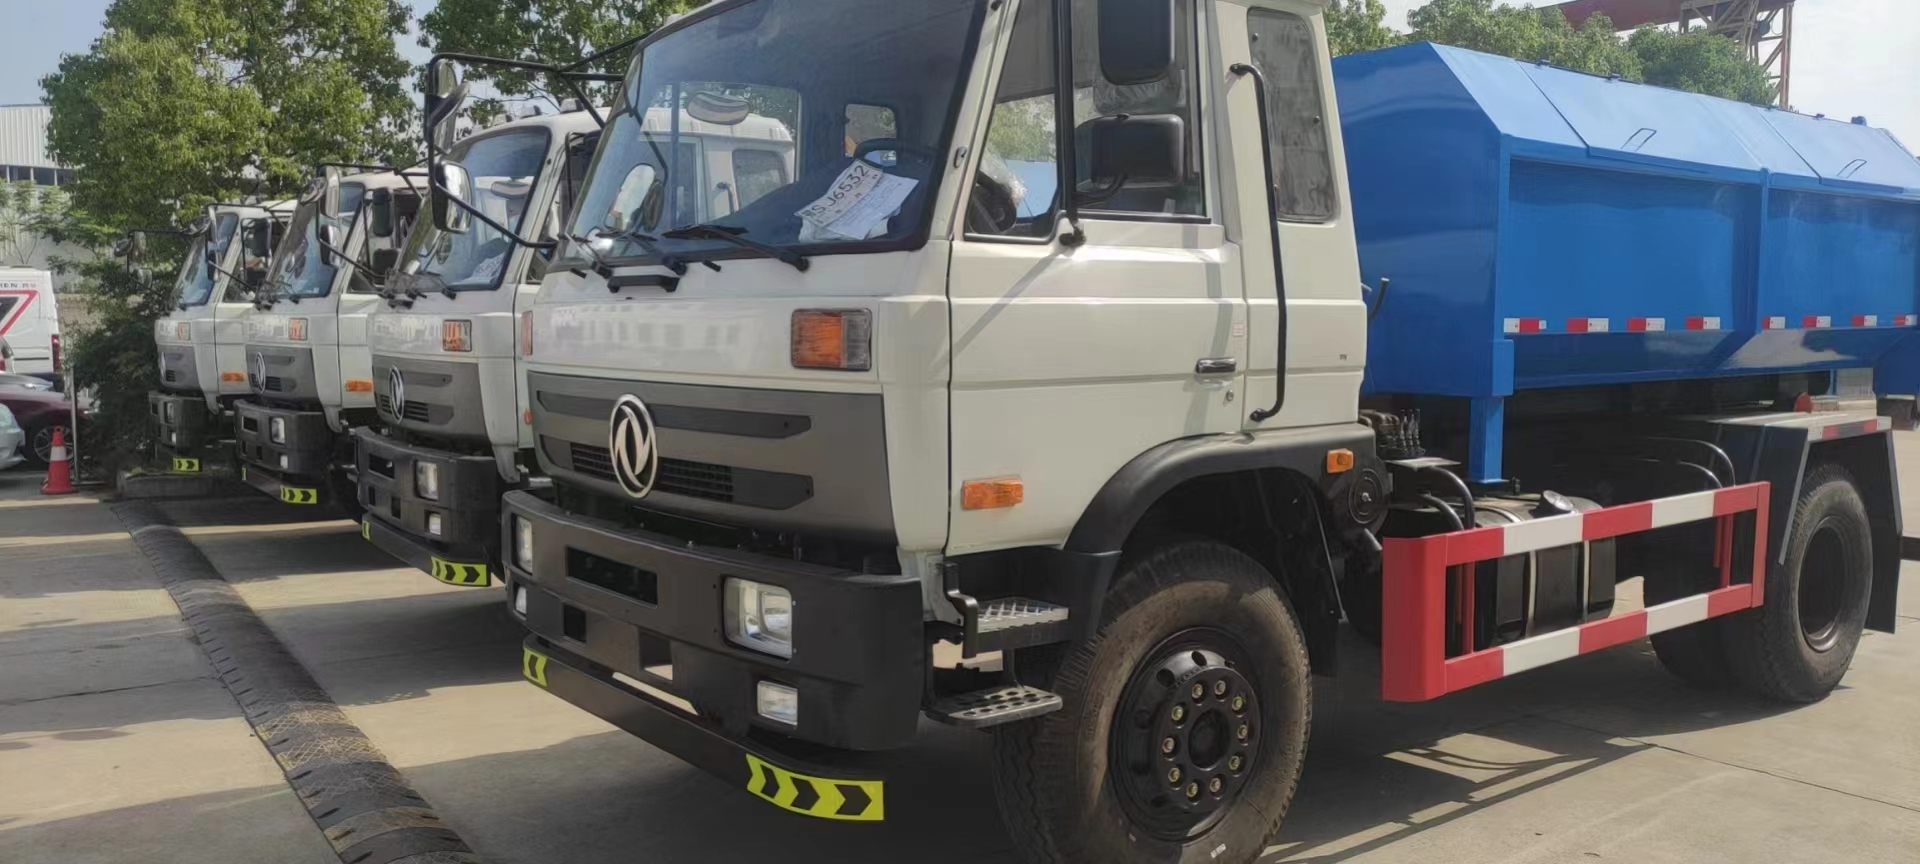 力航汽车网第一批出品垃圾车和油车发往蒙古国